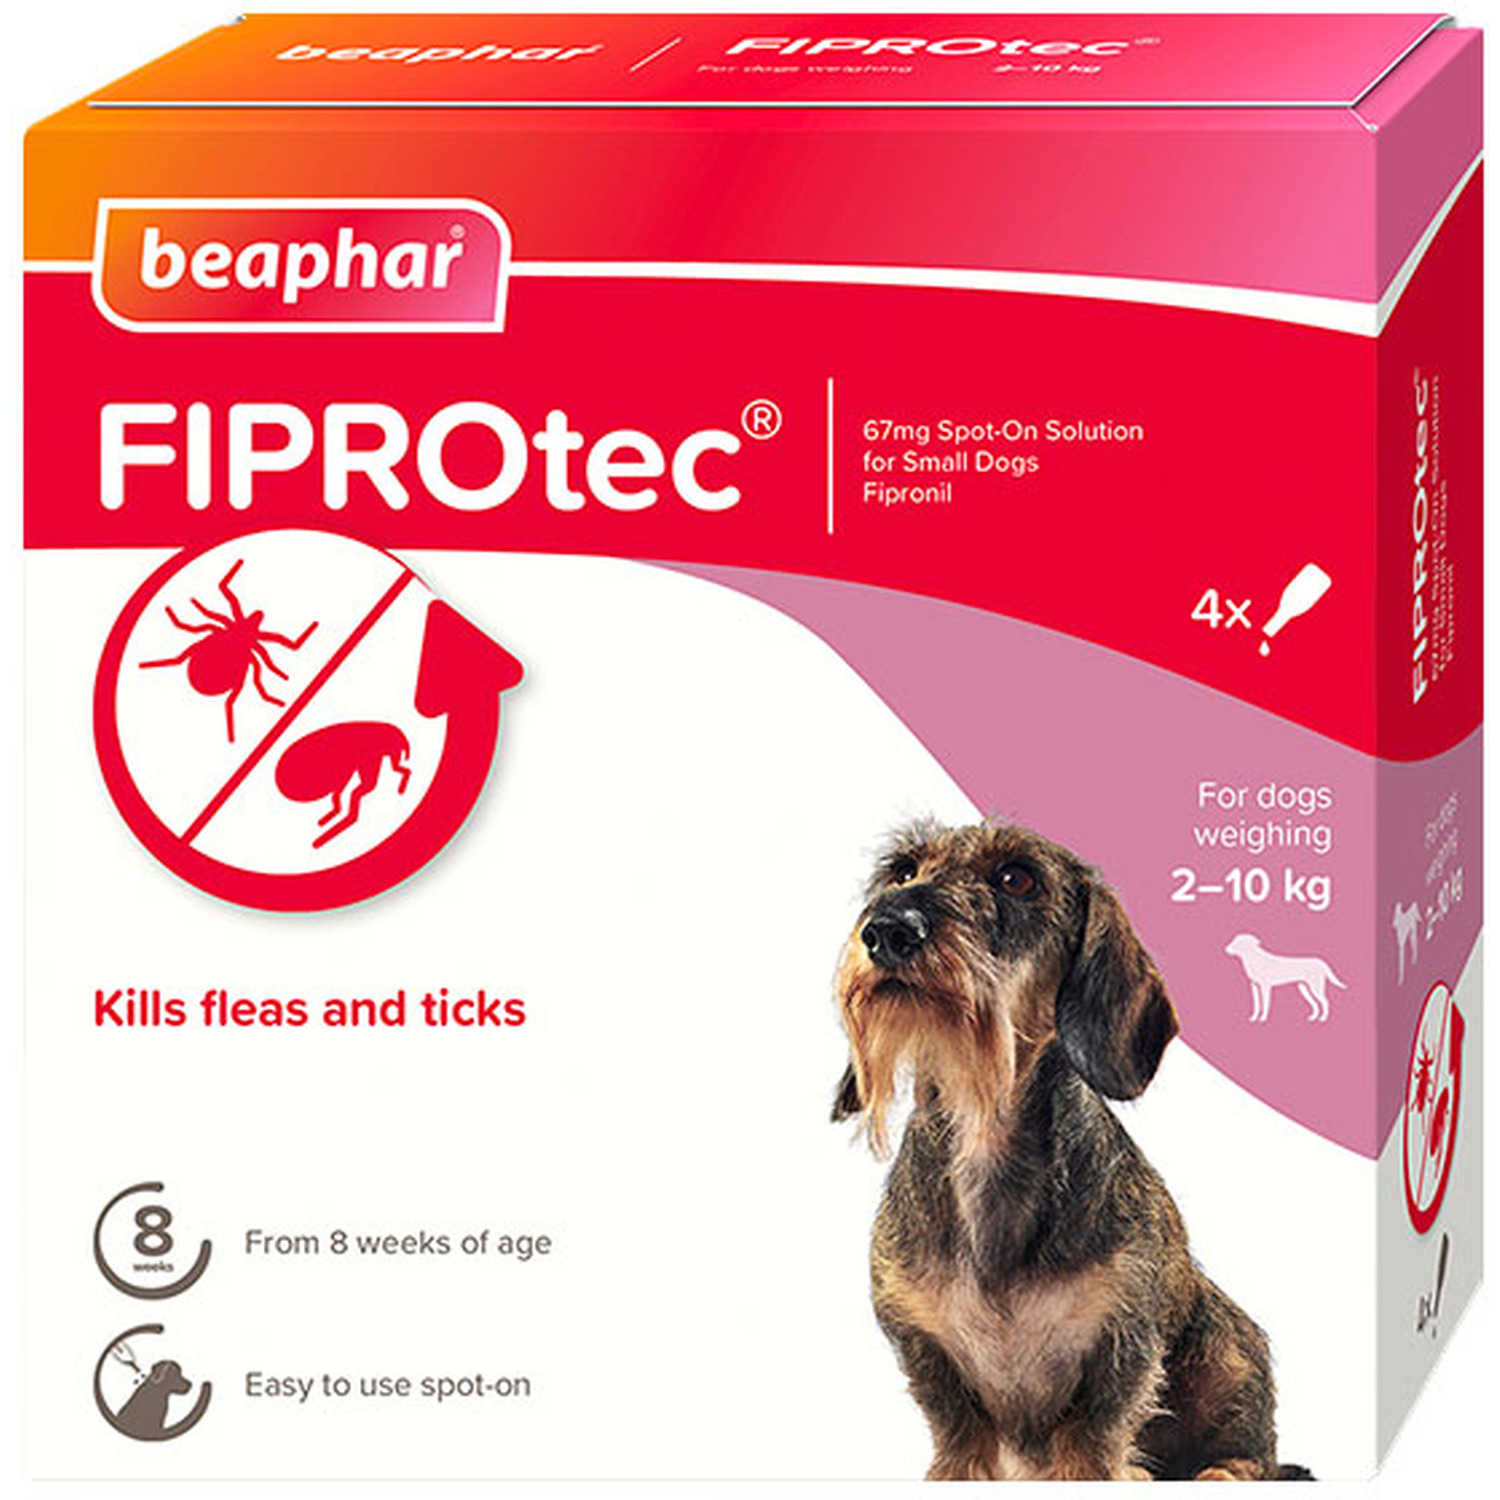 Beaphar Fiprotec Small Dog Spot On 4 Pack Image